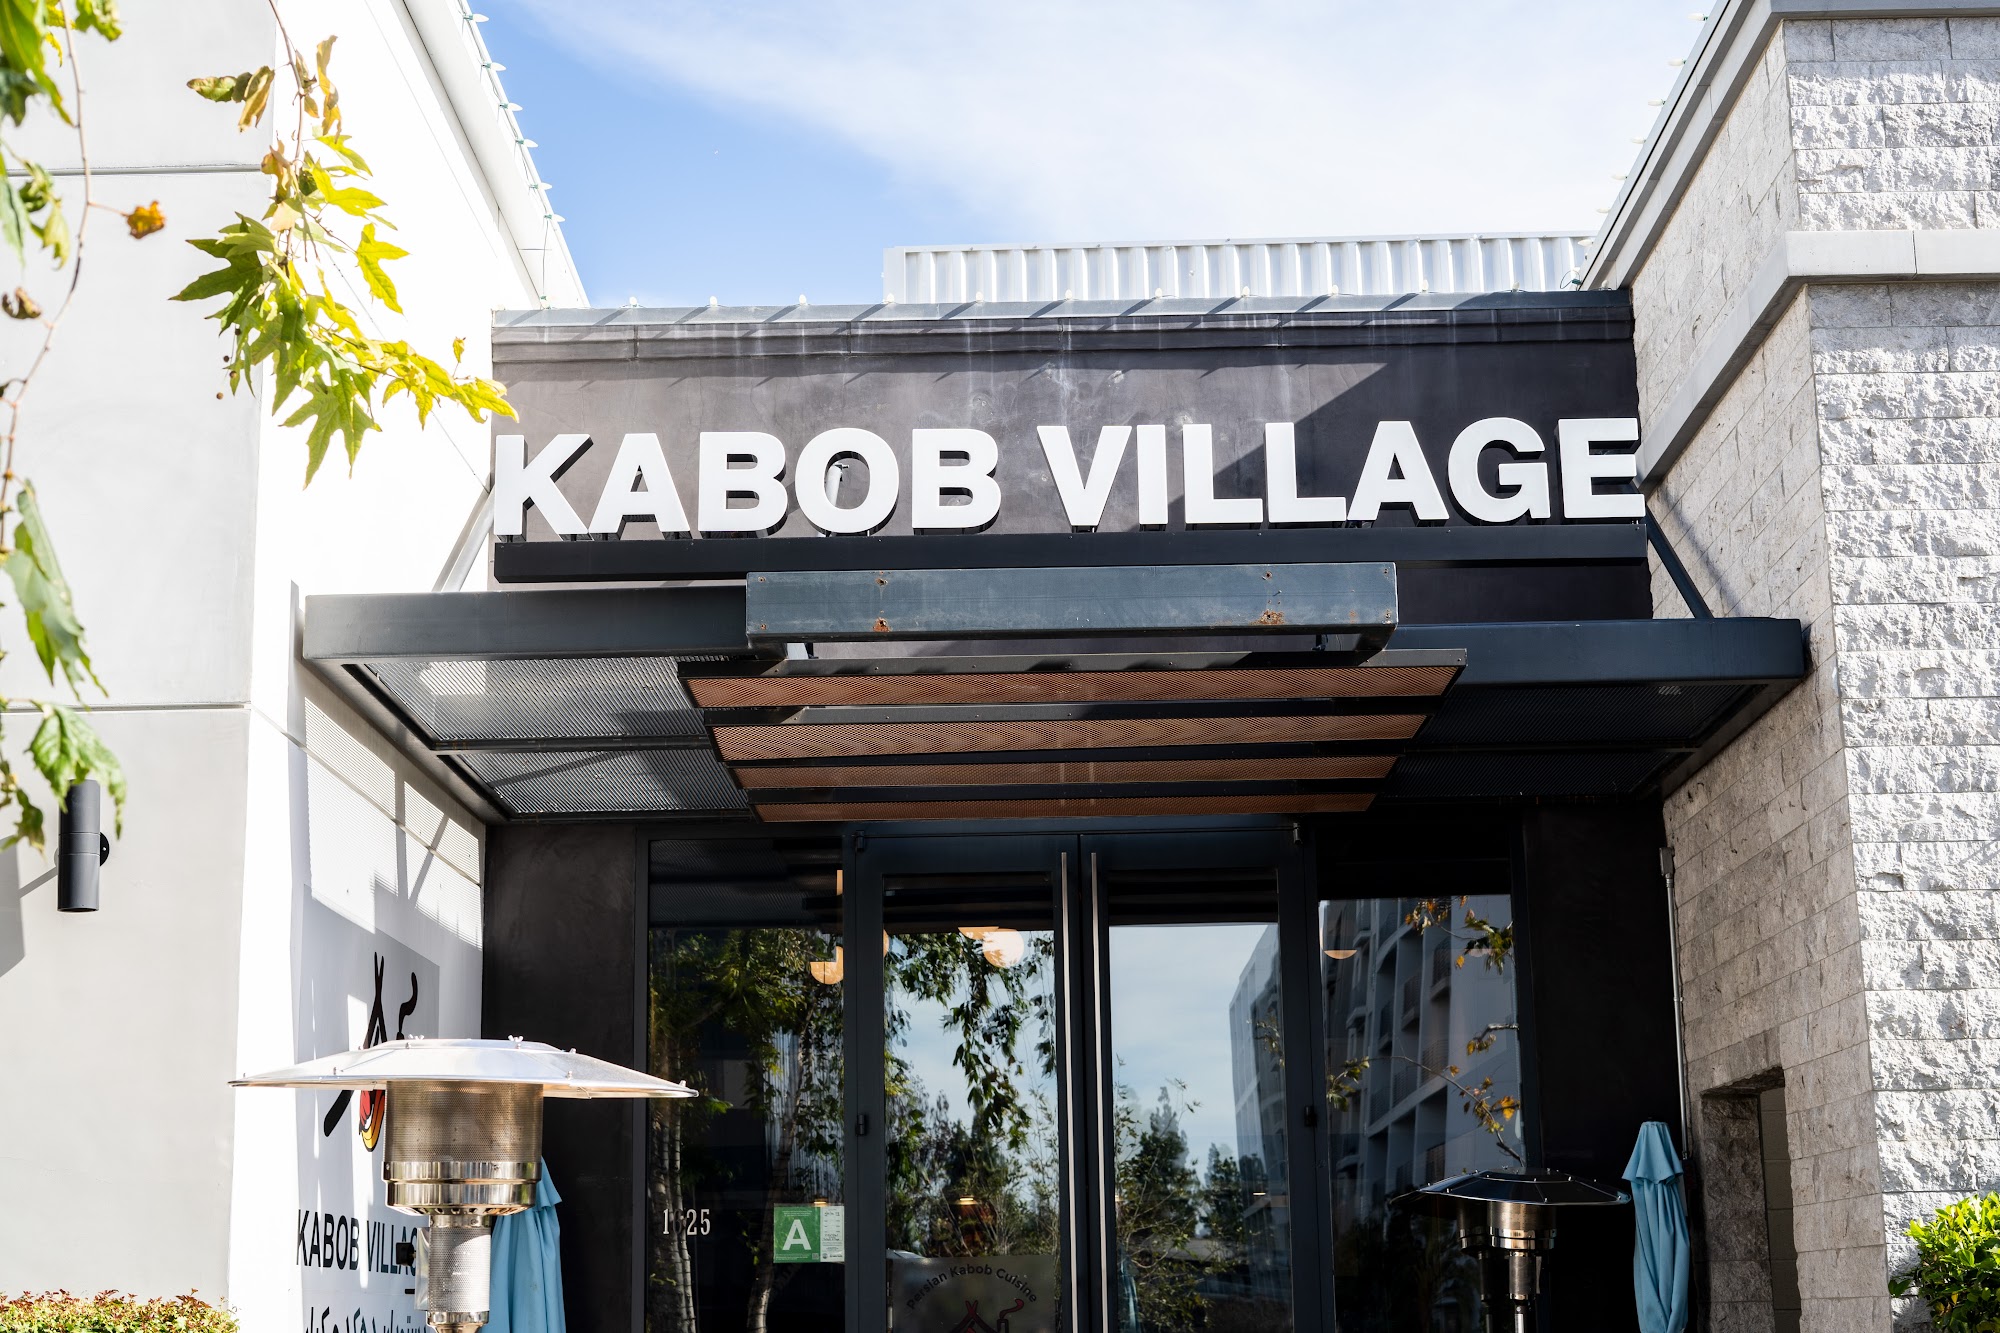 Kabob Village